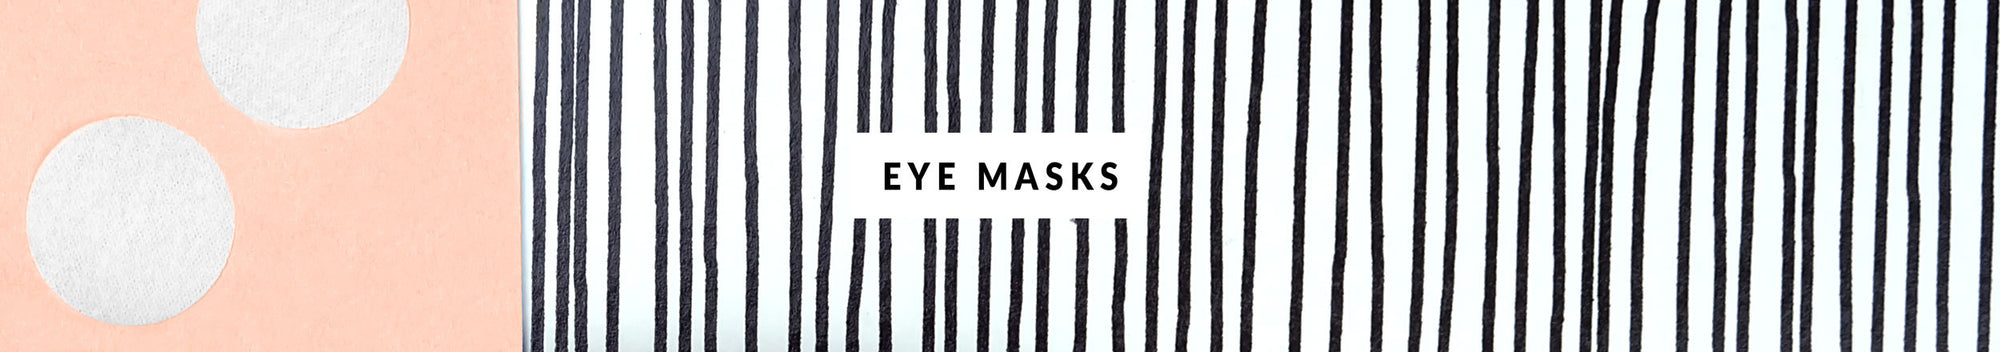 Eye masks